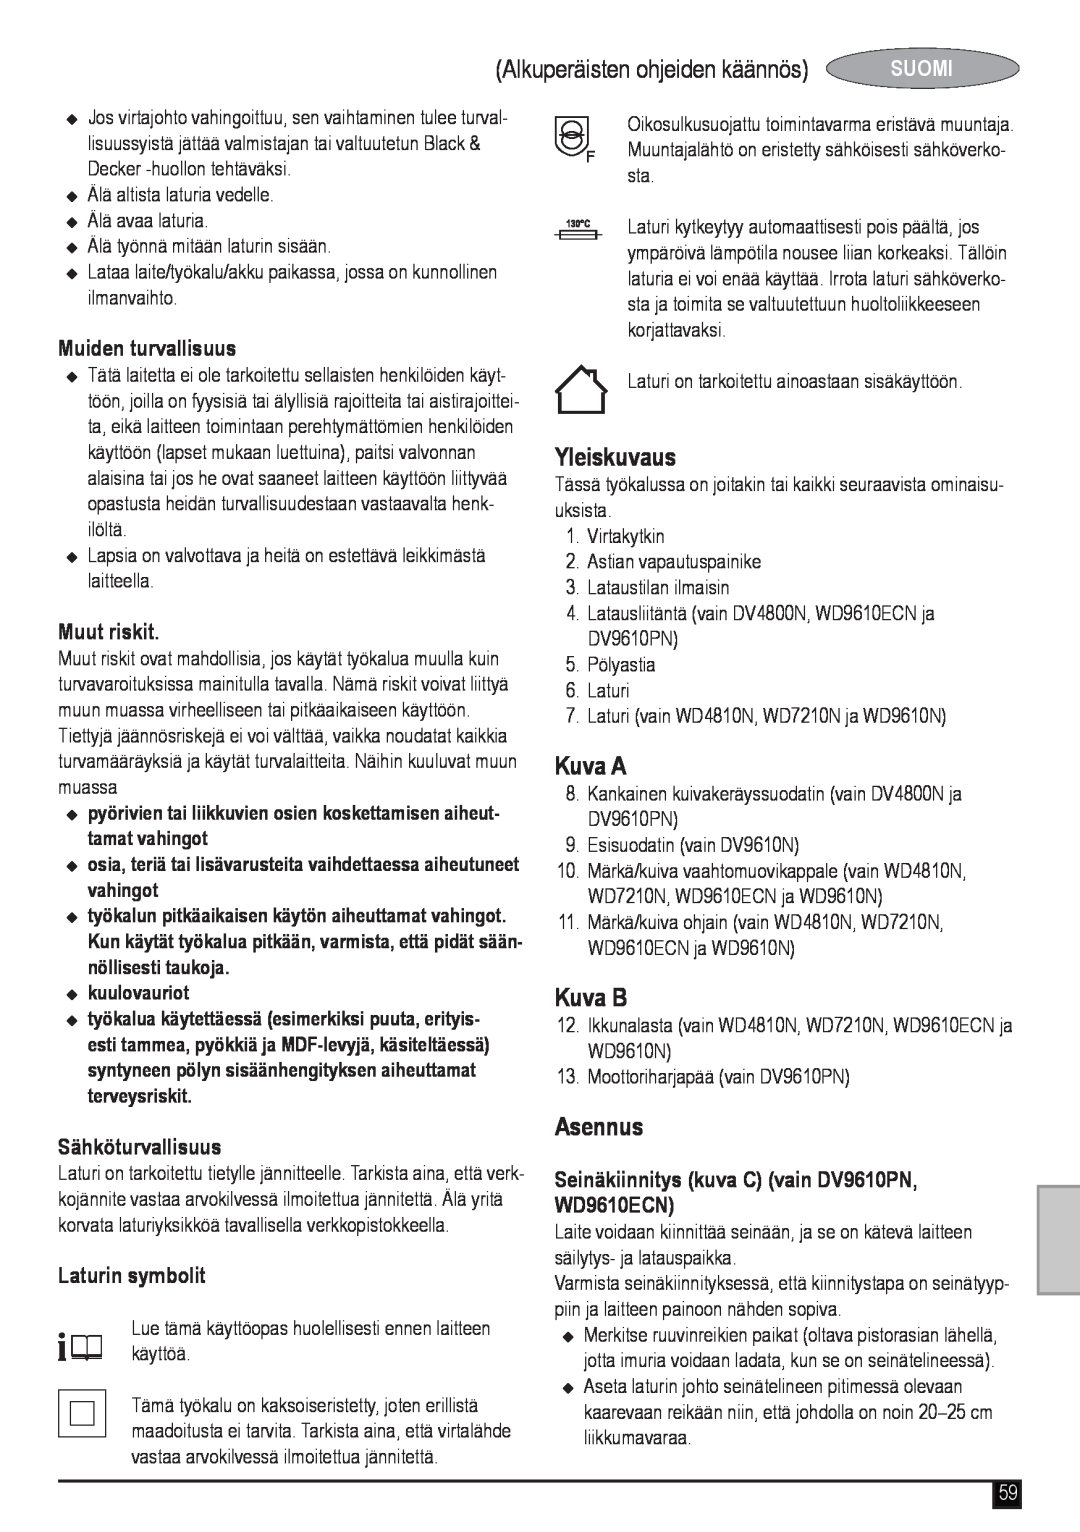 Black & Decker DV9610PN Alkuperäisten ohjeiden käännös, Yleiskuvaus, Kuva A, Kuva B, Asennus, Muiden turvallisuus, Suomi 